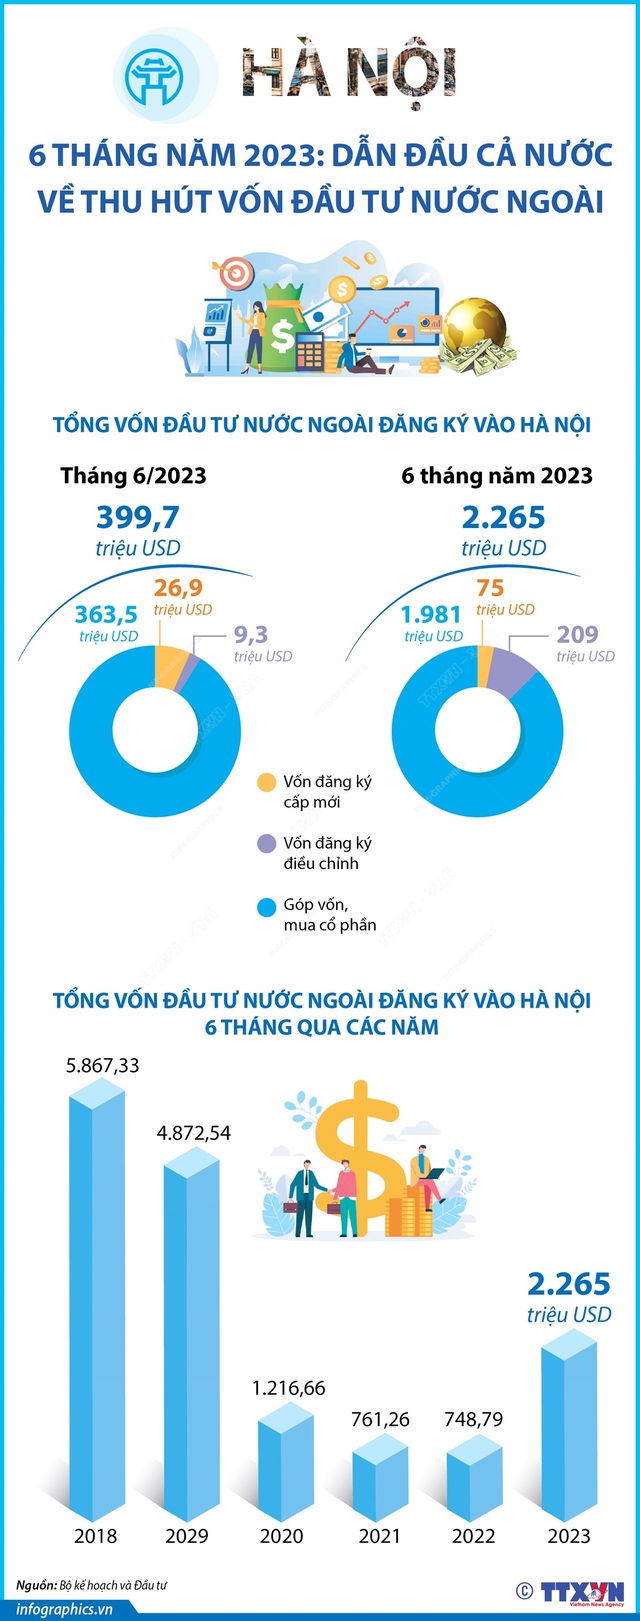 6 tháng năm 2023: Hà Nội dẫn đầu cả nước về thu hút vốn đầu tư nước ngoài - Ảnh 1.